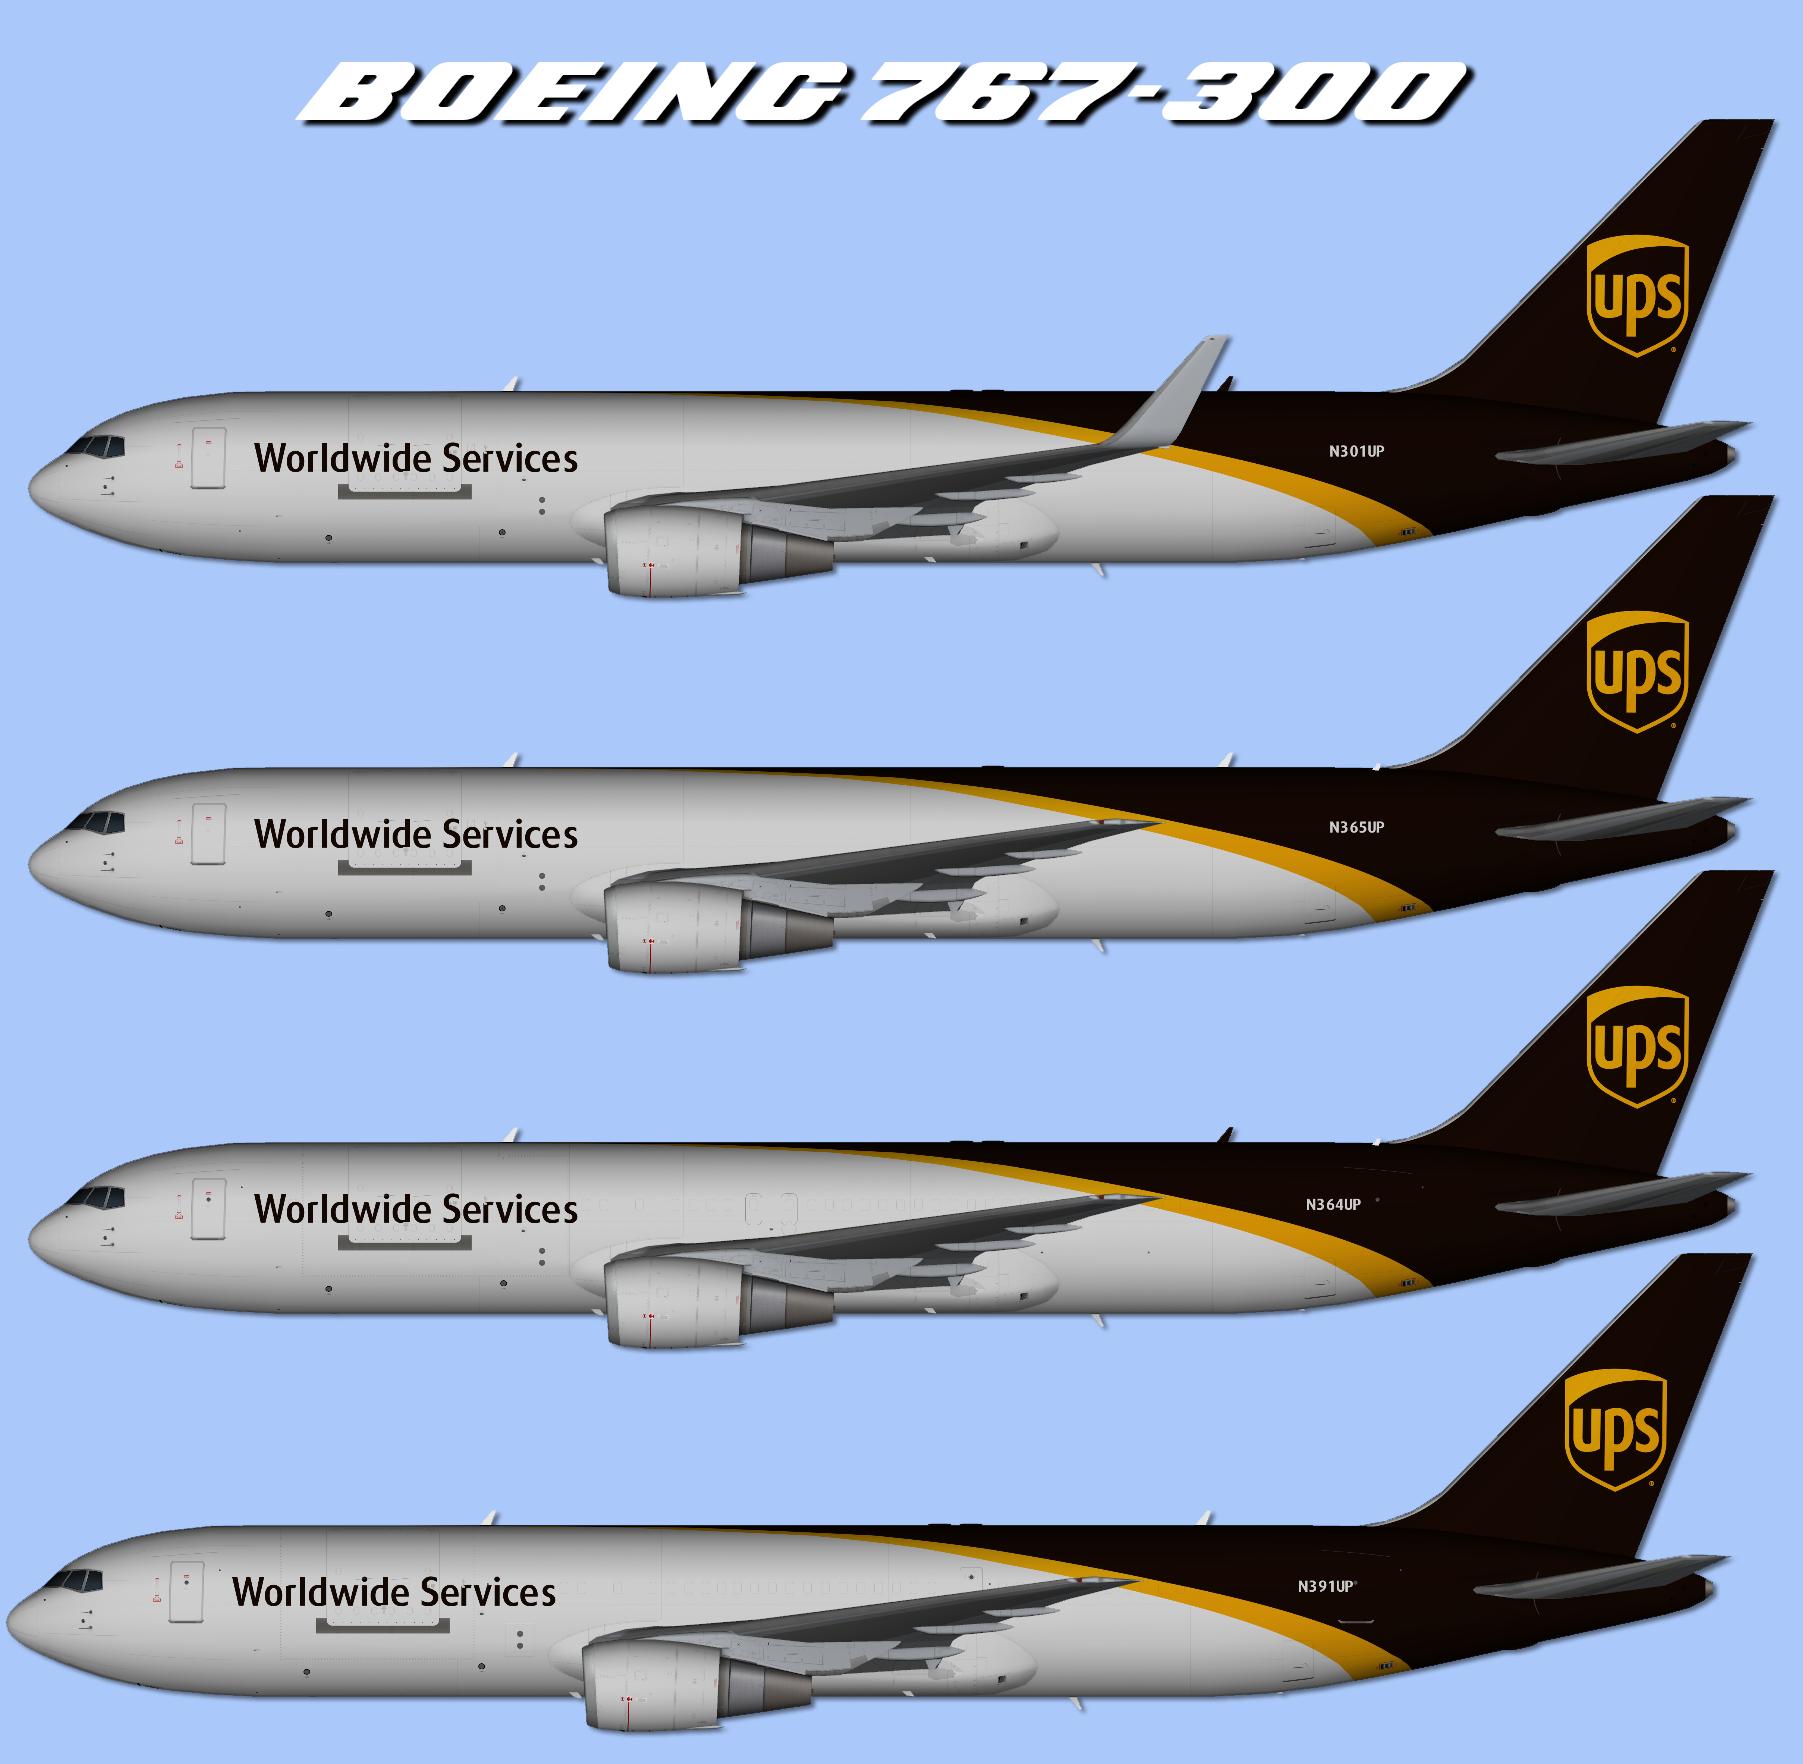 fletes aereos ups - UPS tiene aviones de carga